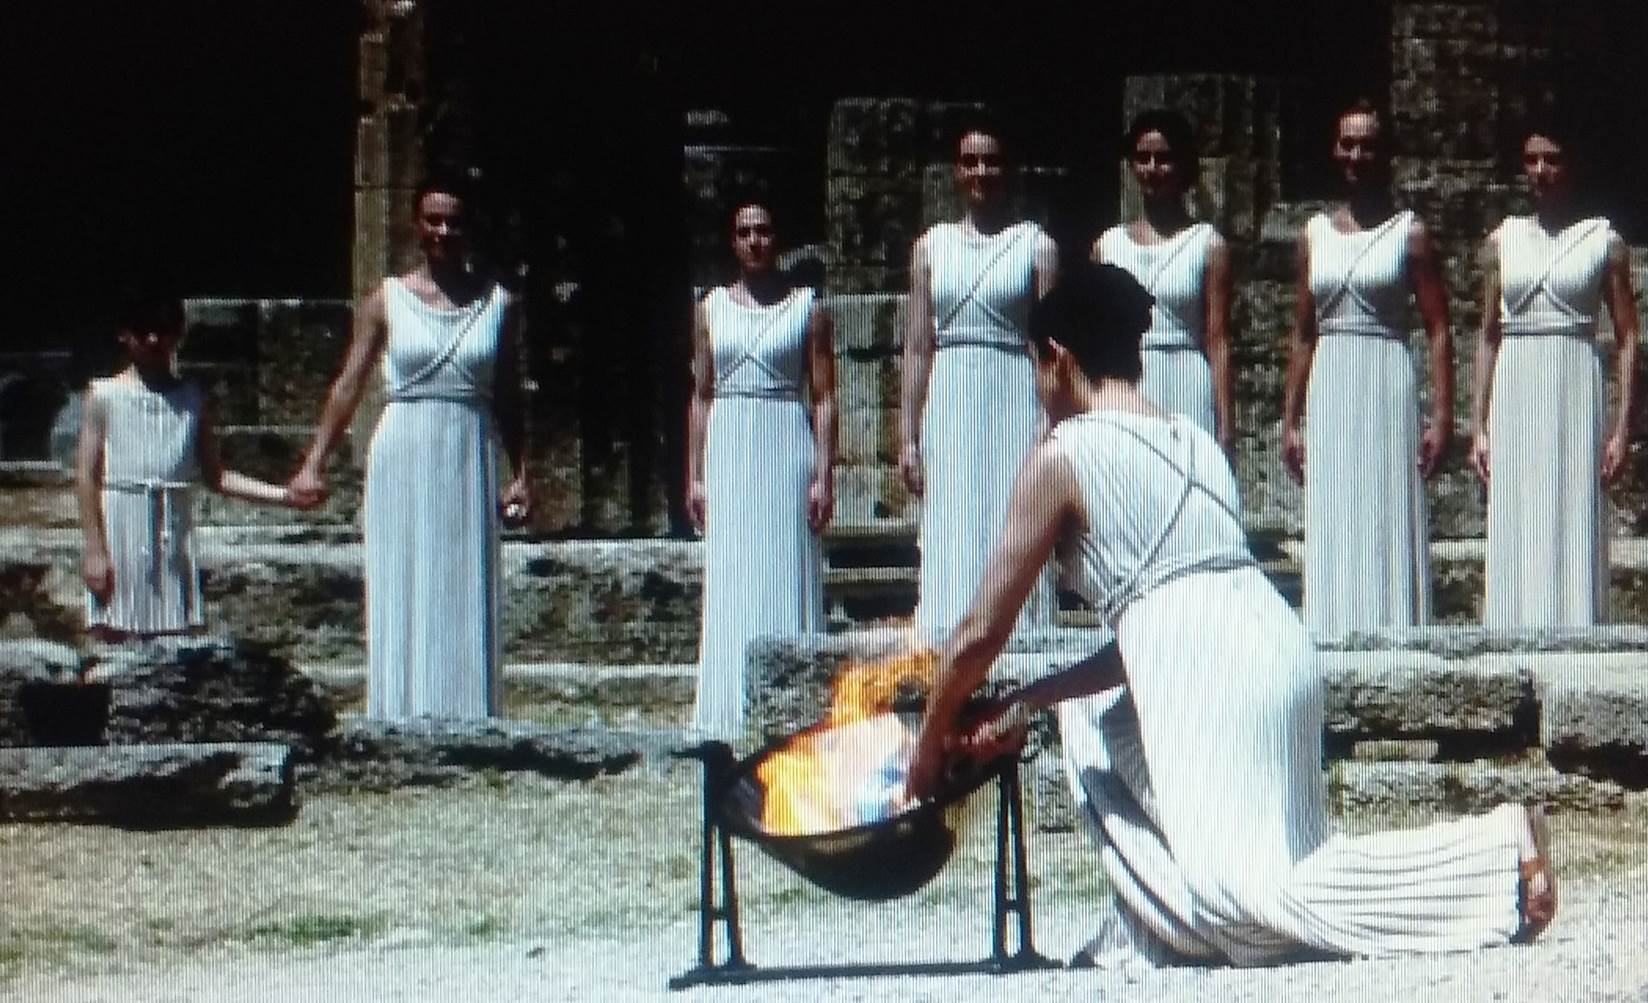 Os jogos Olímpicos na Grécia Antiga – HistóriaBlog